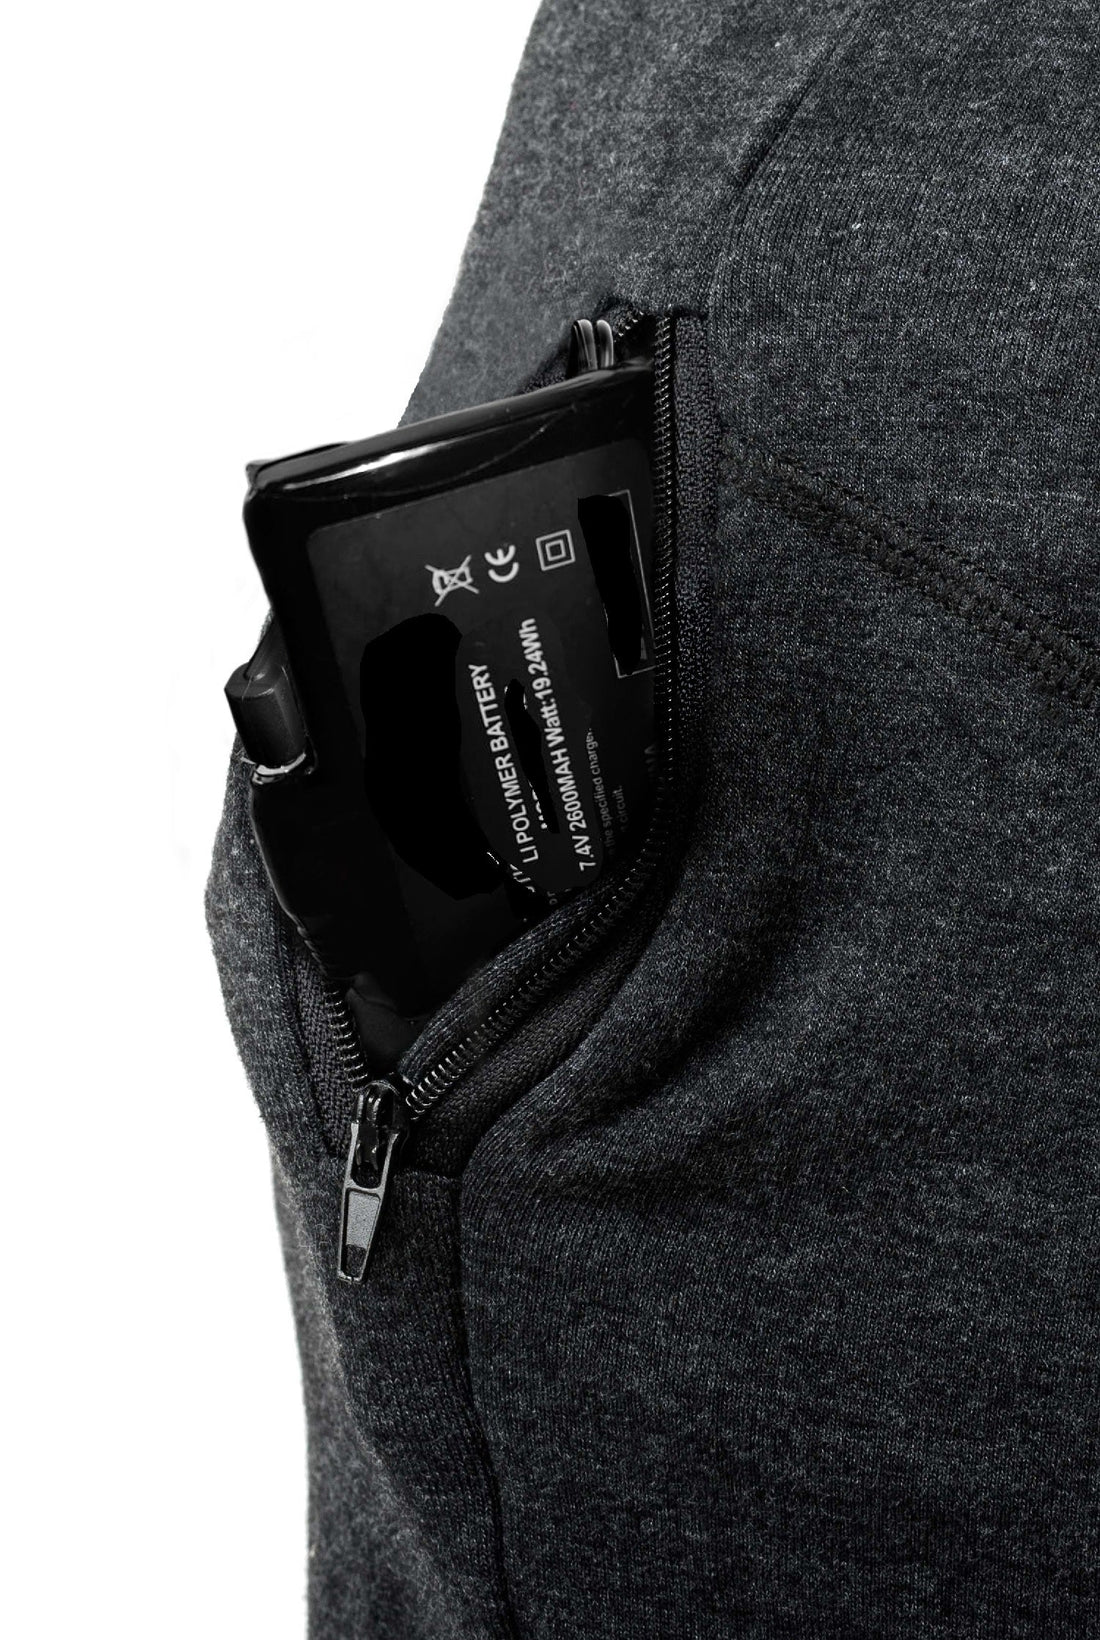 Pantalon Chauffant - PRO  USB – BERTSCHAT® [FR]